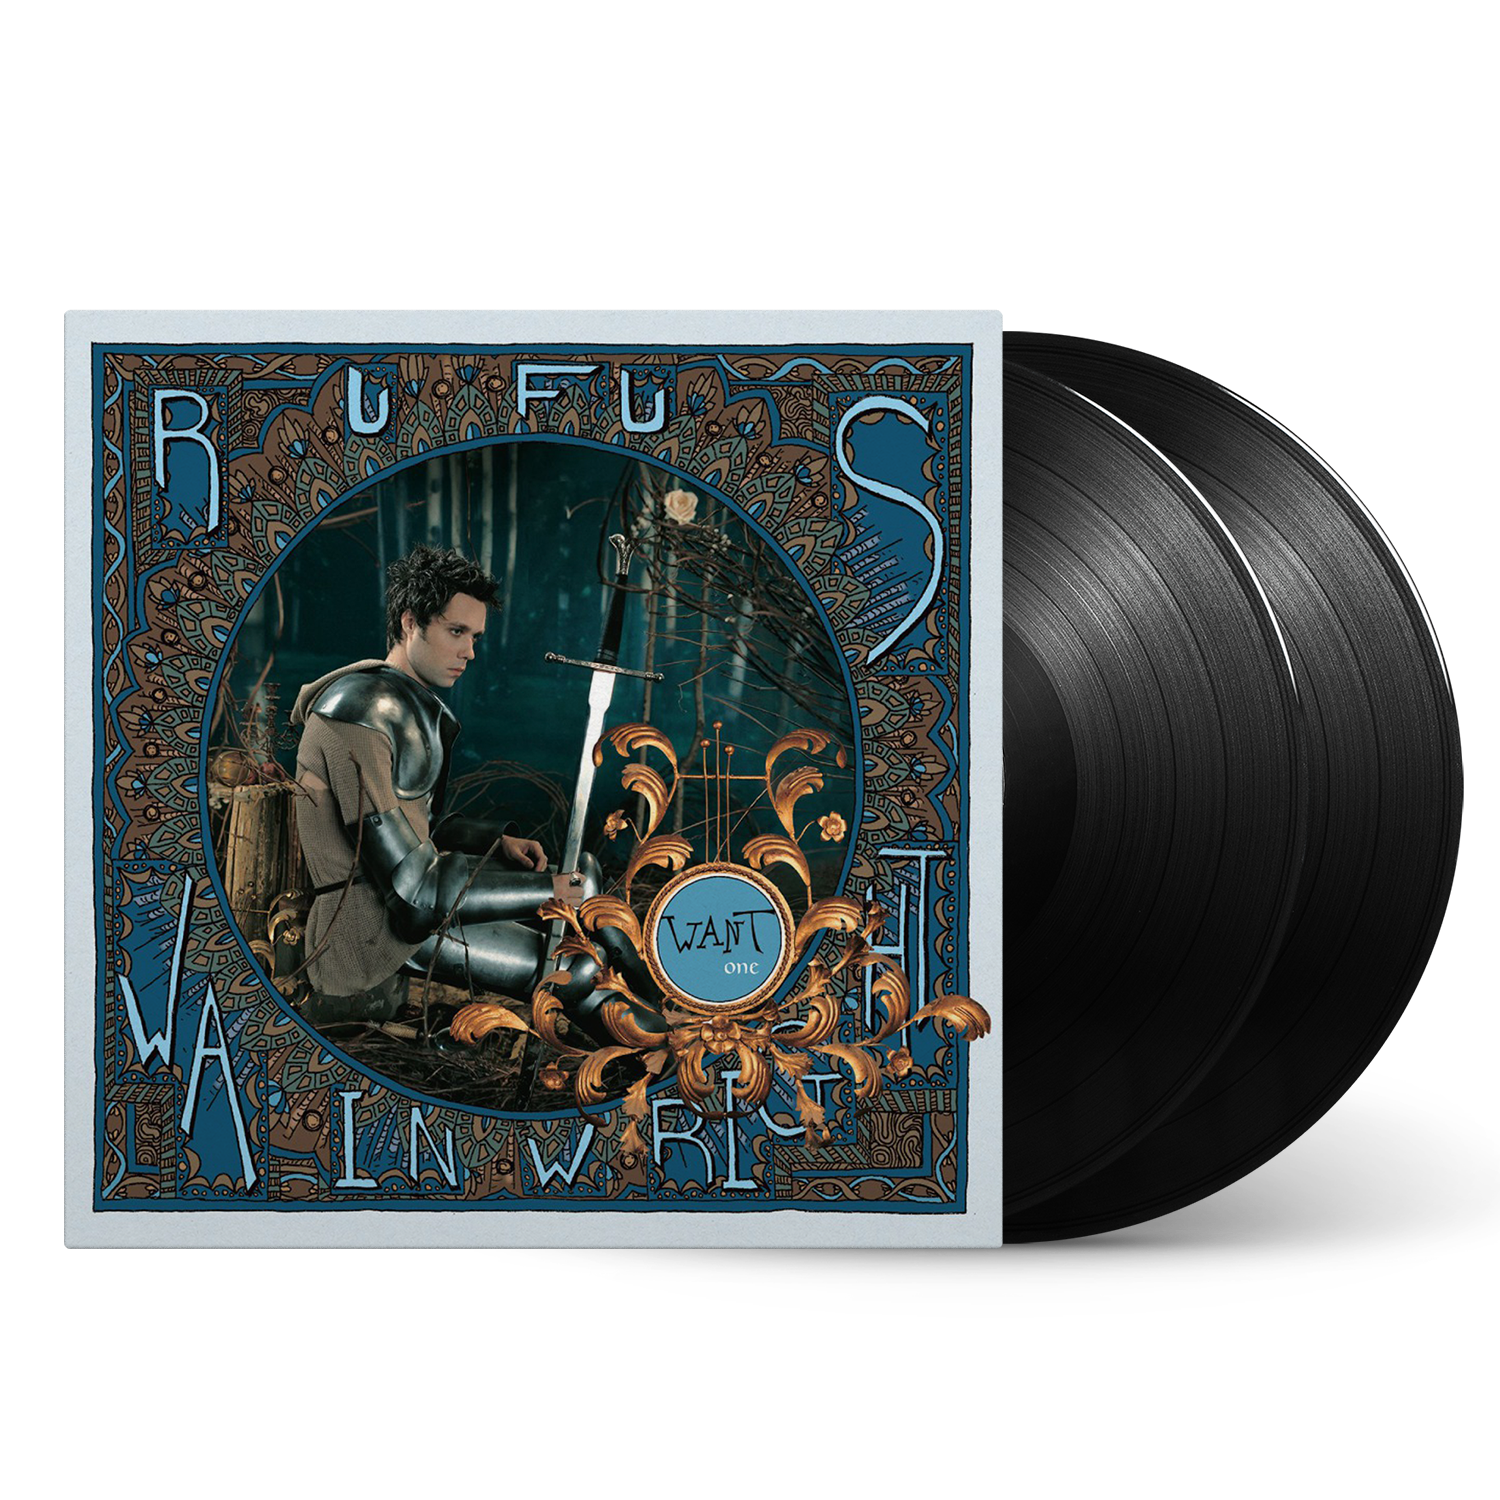 Rufus Wainwright - Want One: 20th Anniversary: Vinyl 2LP